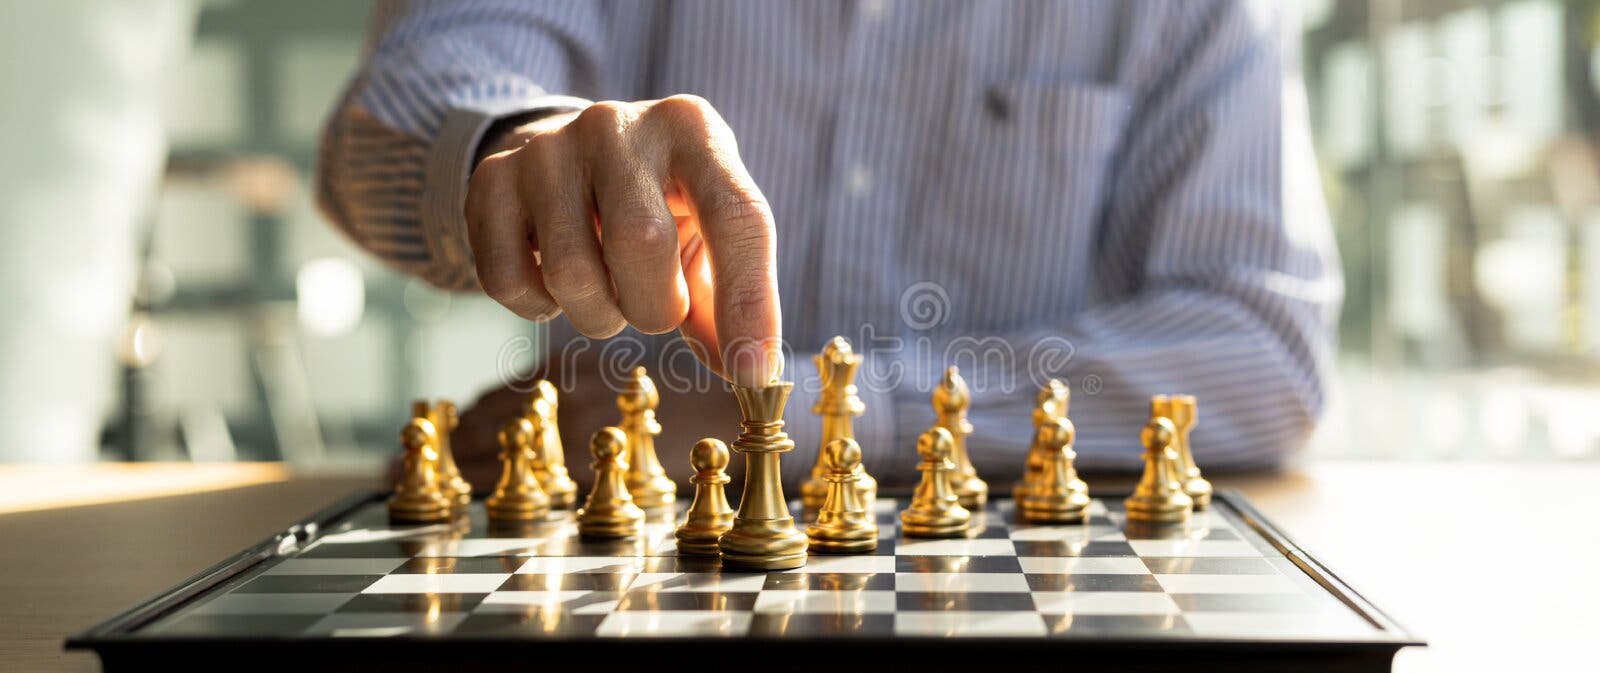 Pessoa jogando xadrez, imagem conceitual de uma mulher de negócios  segurando peças de xadrez contra o oponente, xadrez contra a concorrência  comercial, planejando estratégias de negócios para derrotar os concorrentes